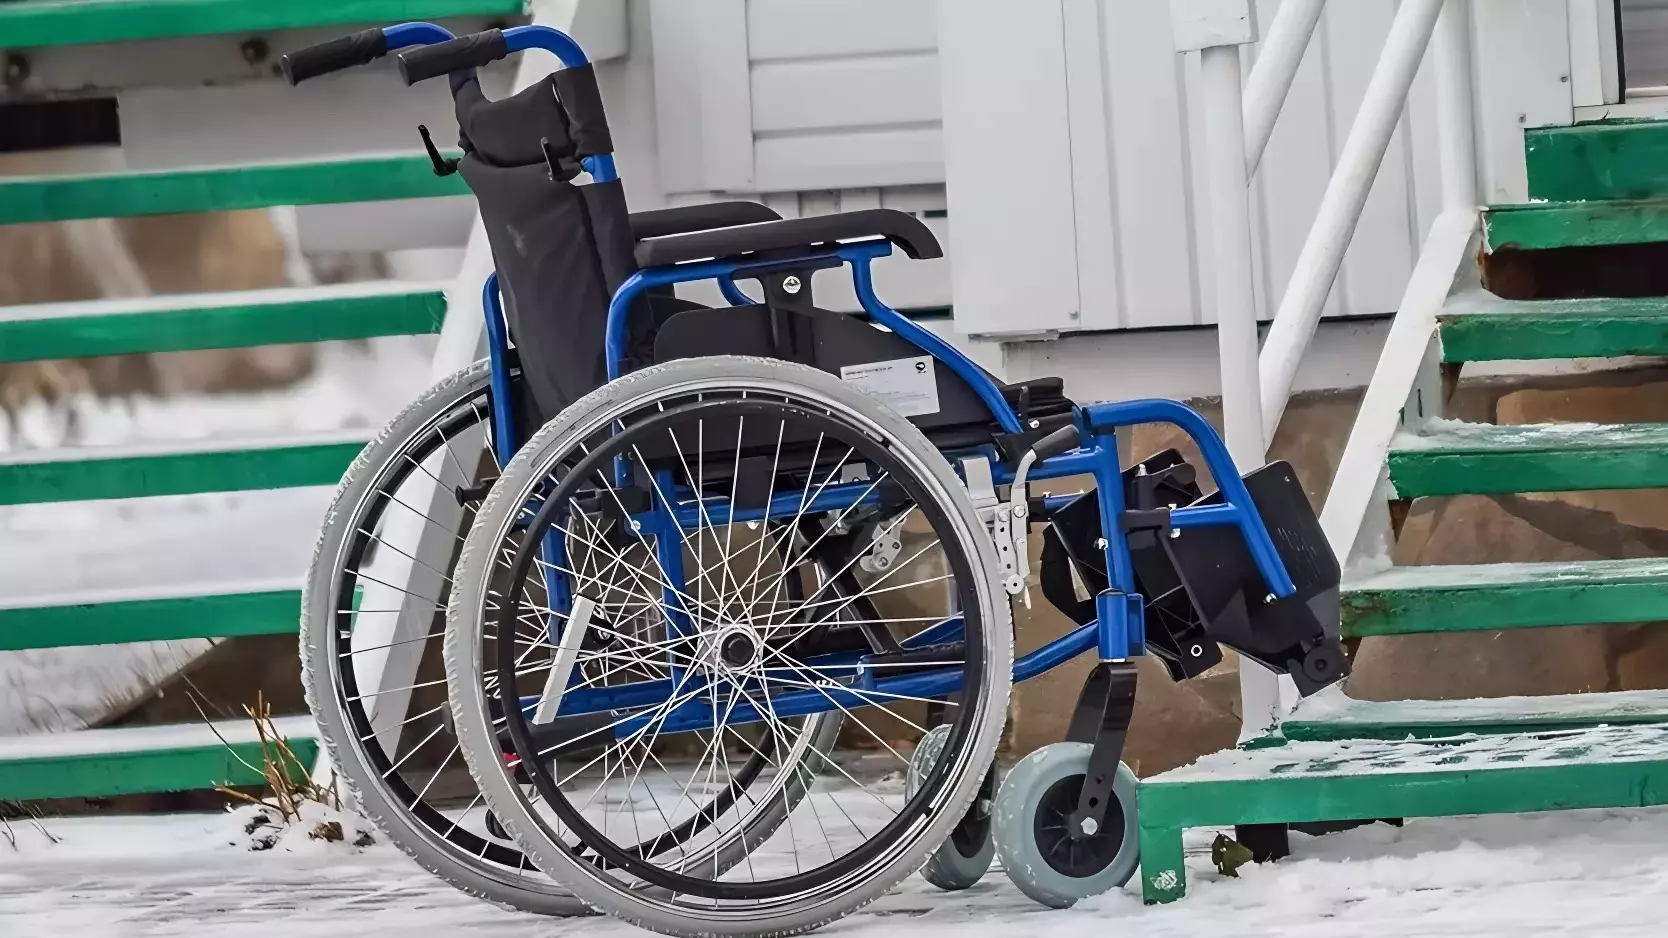 Пациенты больницы пожаловались, что проехать в уборную на инвалидном кресле невозможно